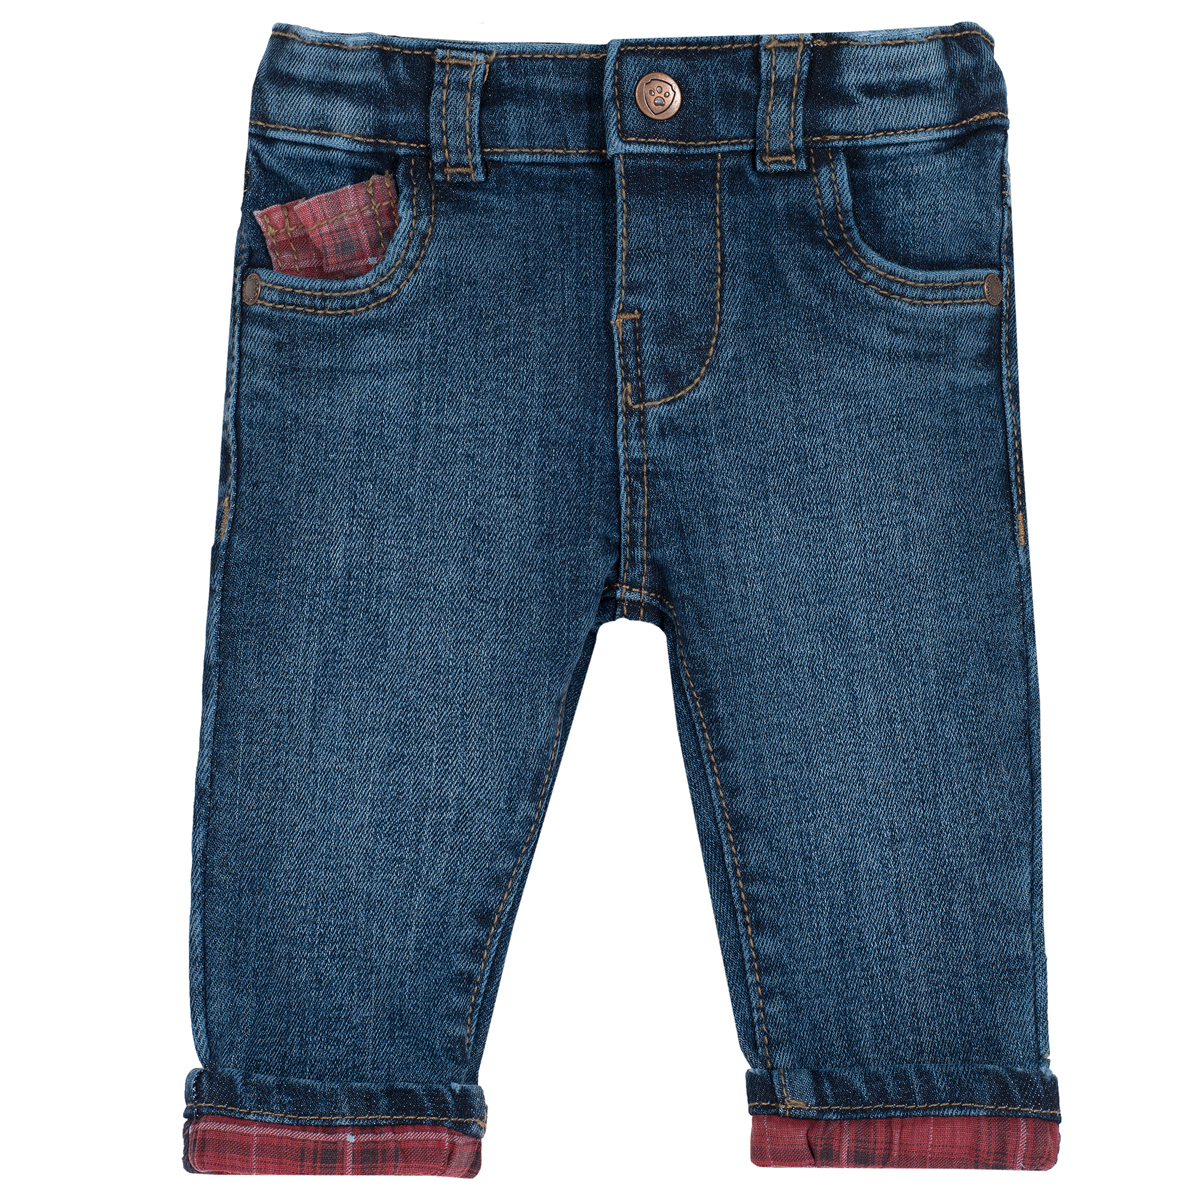 Pantaloni lungi copii Chicco, denim elastic, 08050